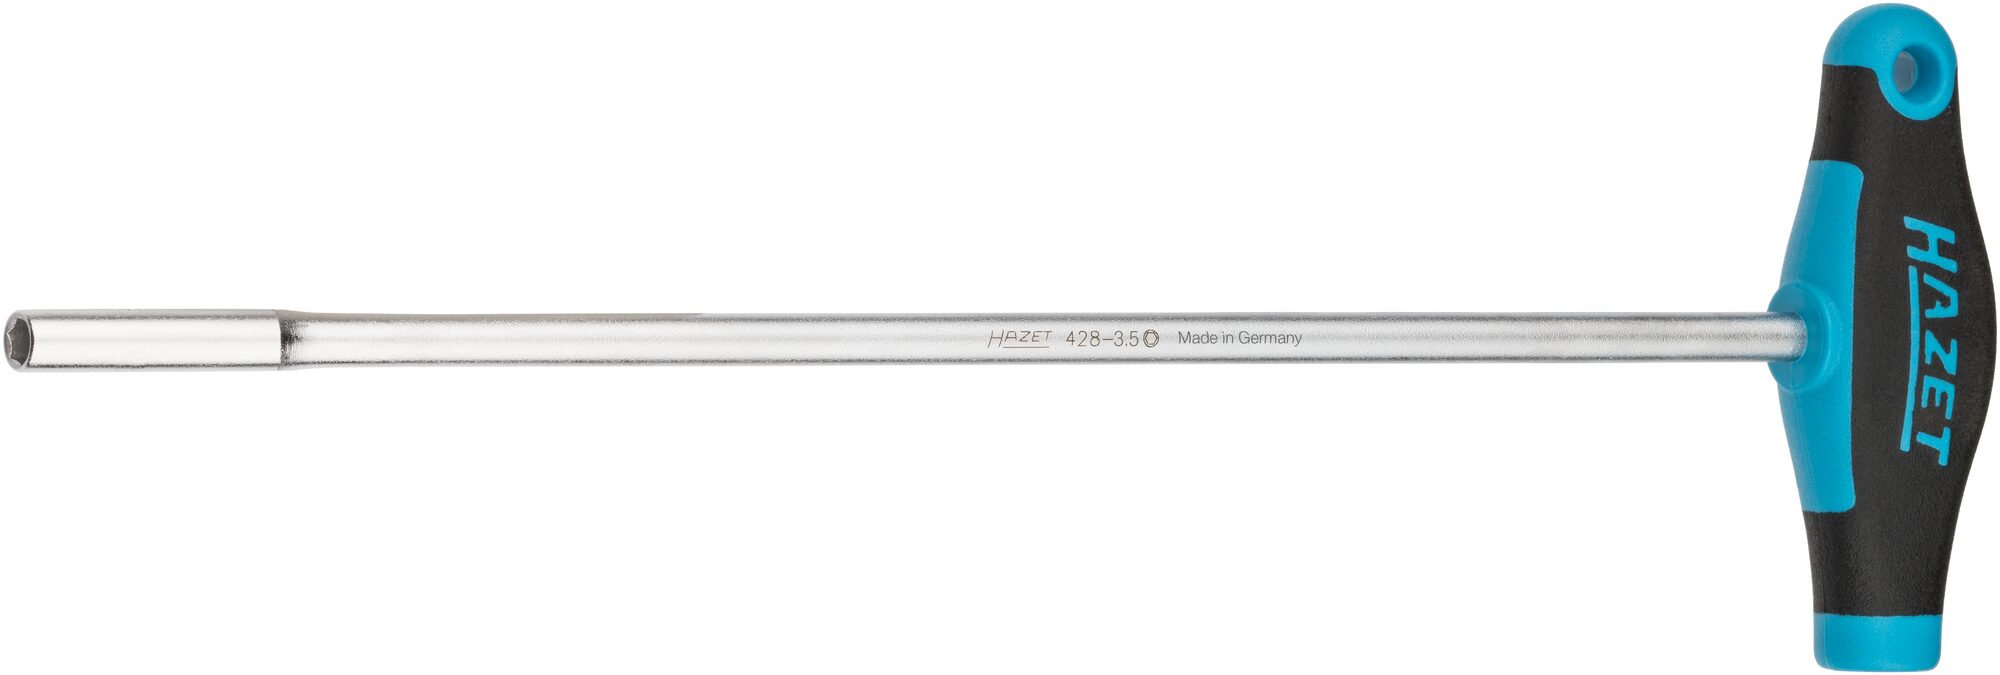 HAZET Radarkopf-Steckschlüssel 428-3.5 · Außen Sechskant Profil · 3.5 mm